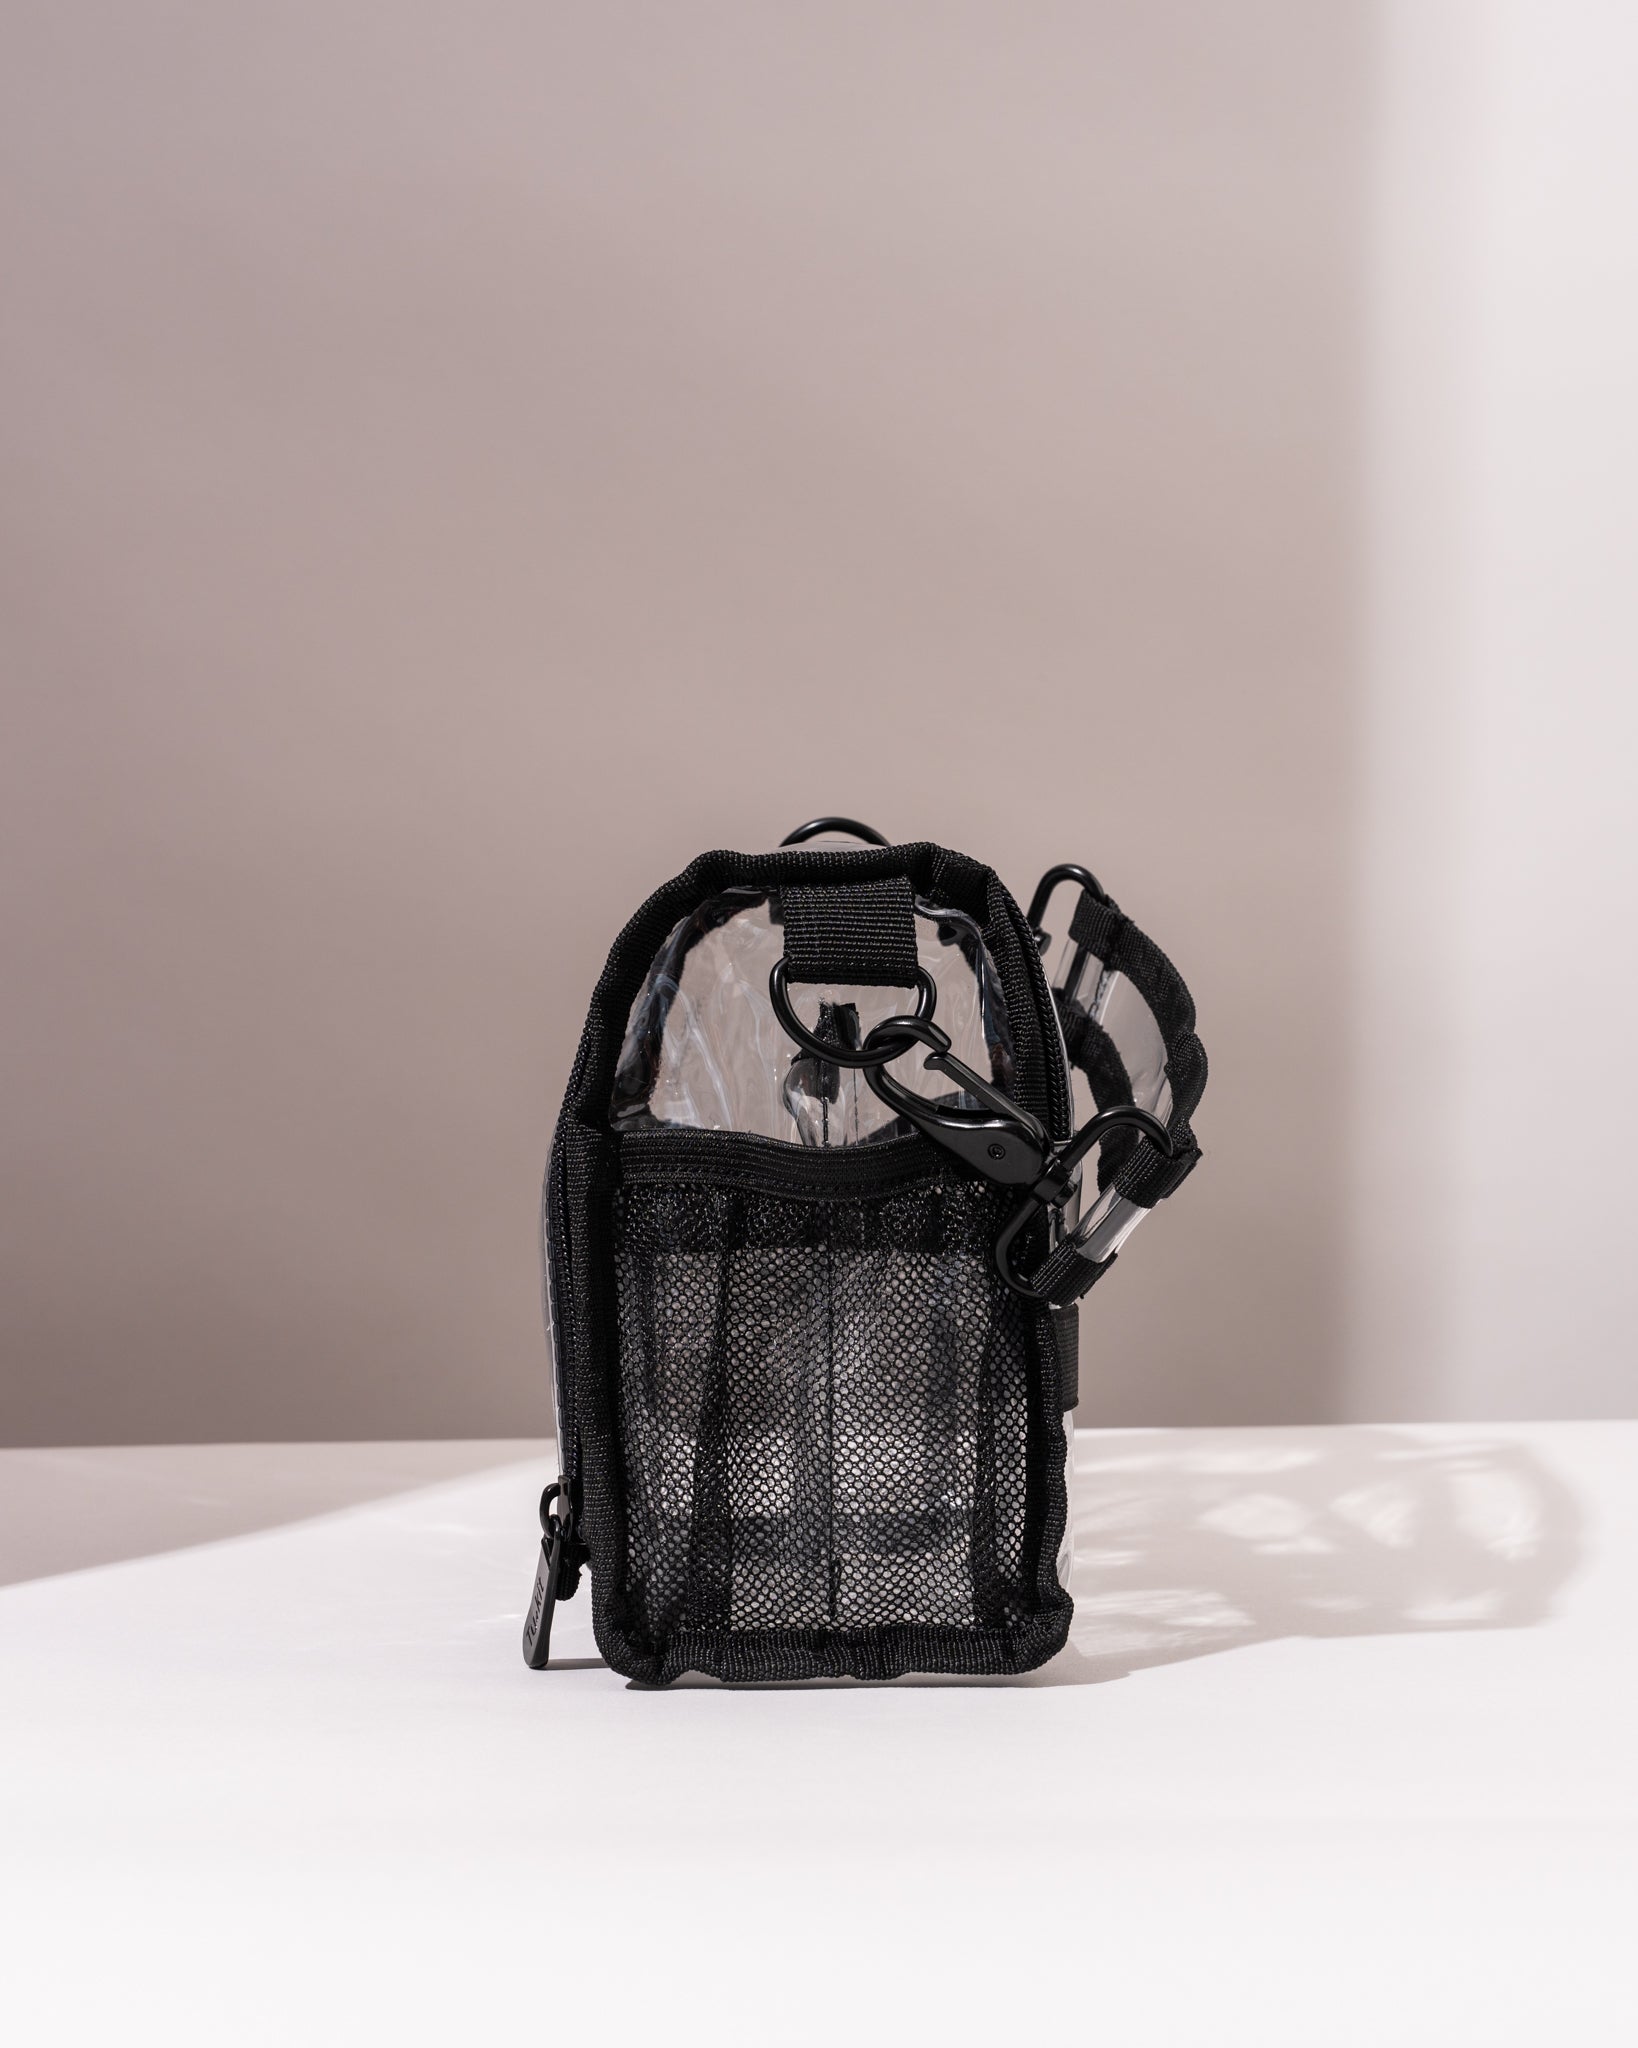 Bag 1.0 – Tu & kit